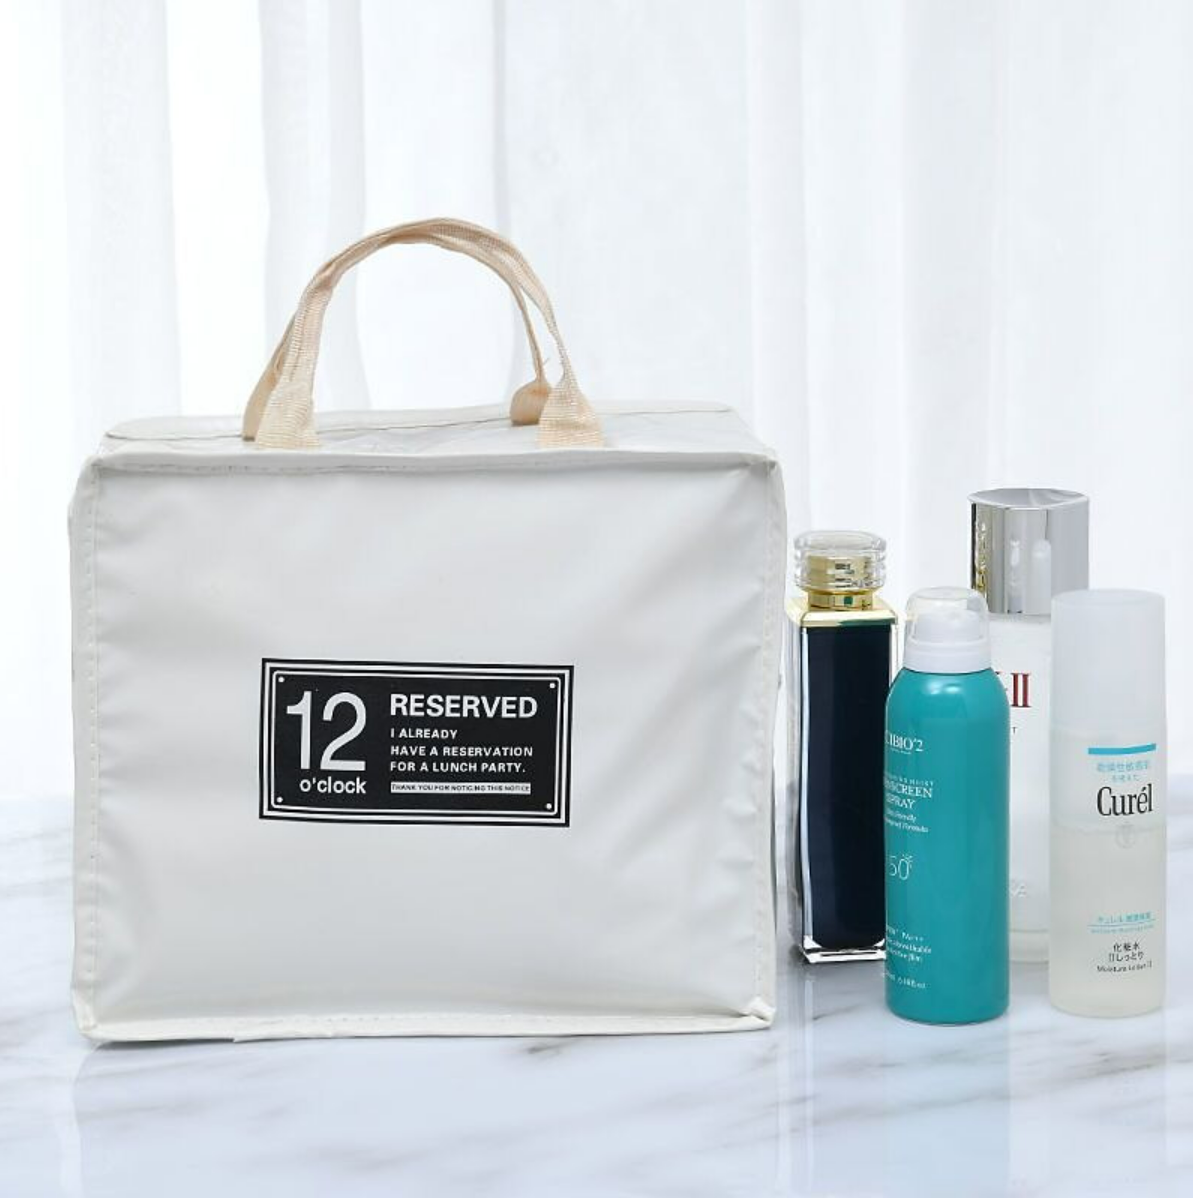 Ladies Fashion Storage Bag Travel Portable Cosmetic Bag Washing Bag Washing Set Cosmetic Storage Bag